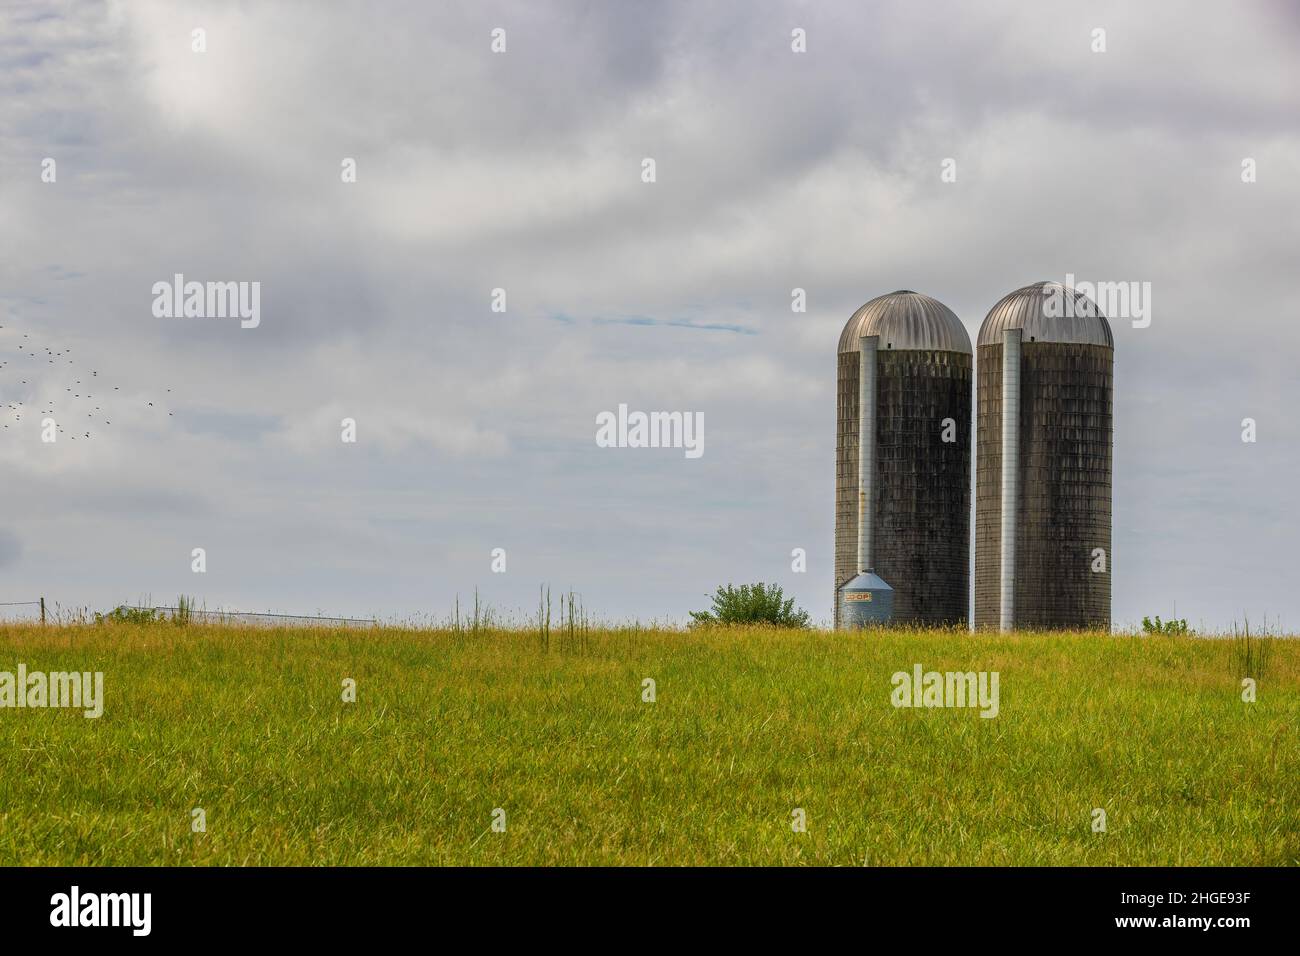 Tennessee orientale rurale, paesaggio agricolo con silo sito su una collina sotto cielo nuvoloso. Foto Stock